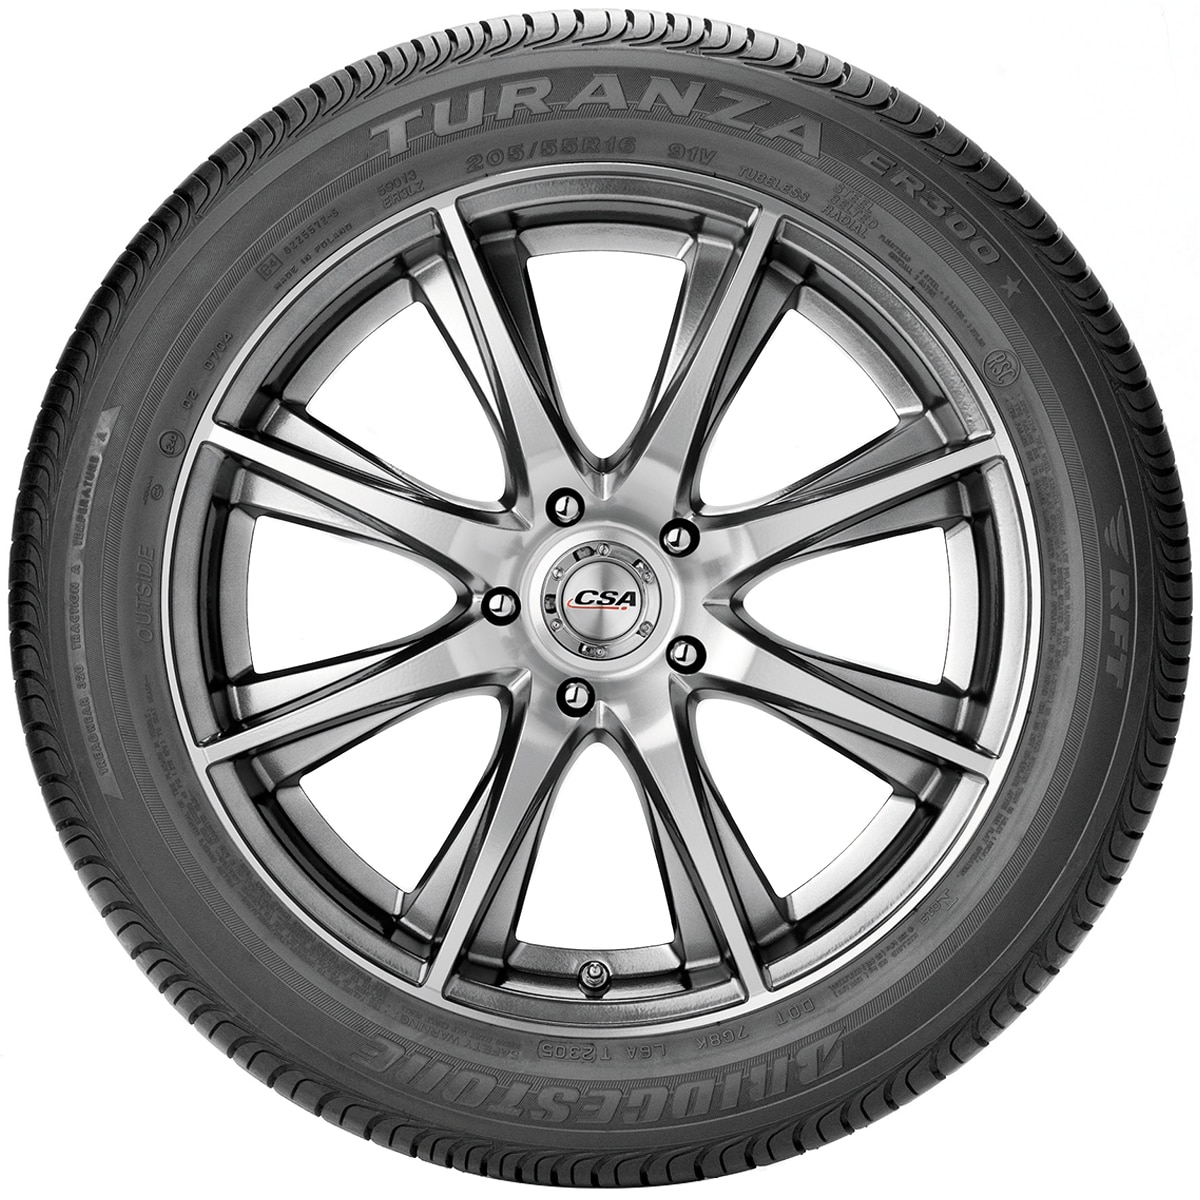 225/60R16 98V ER300 - Tyre